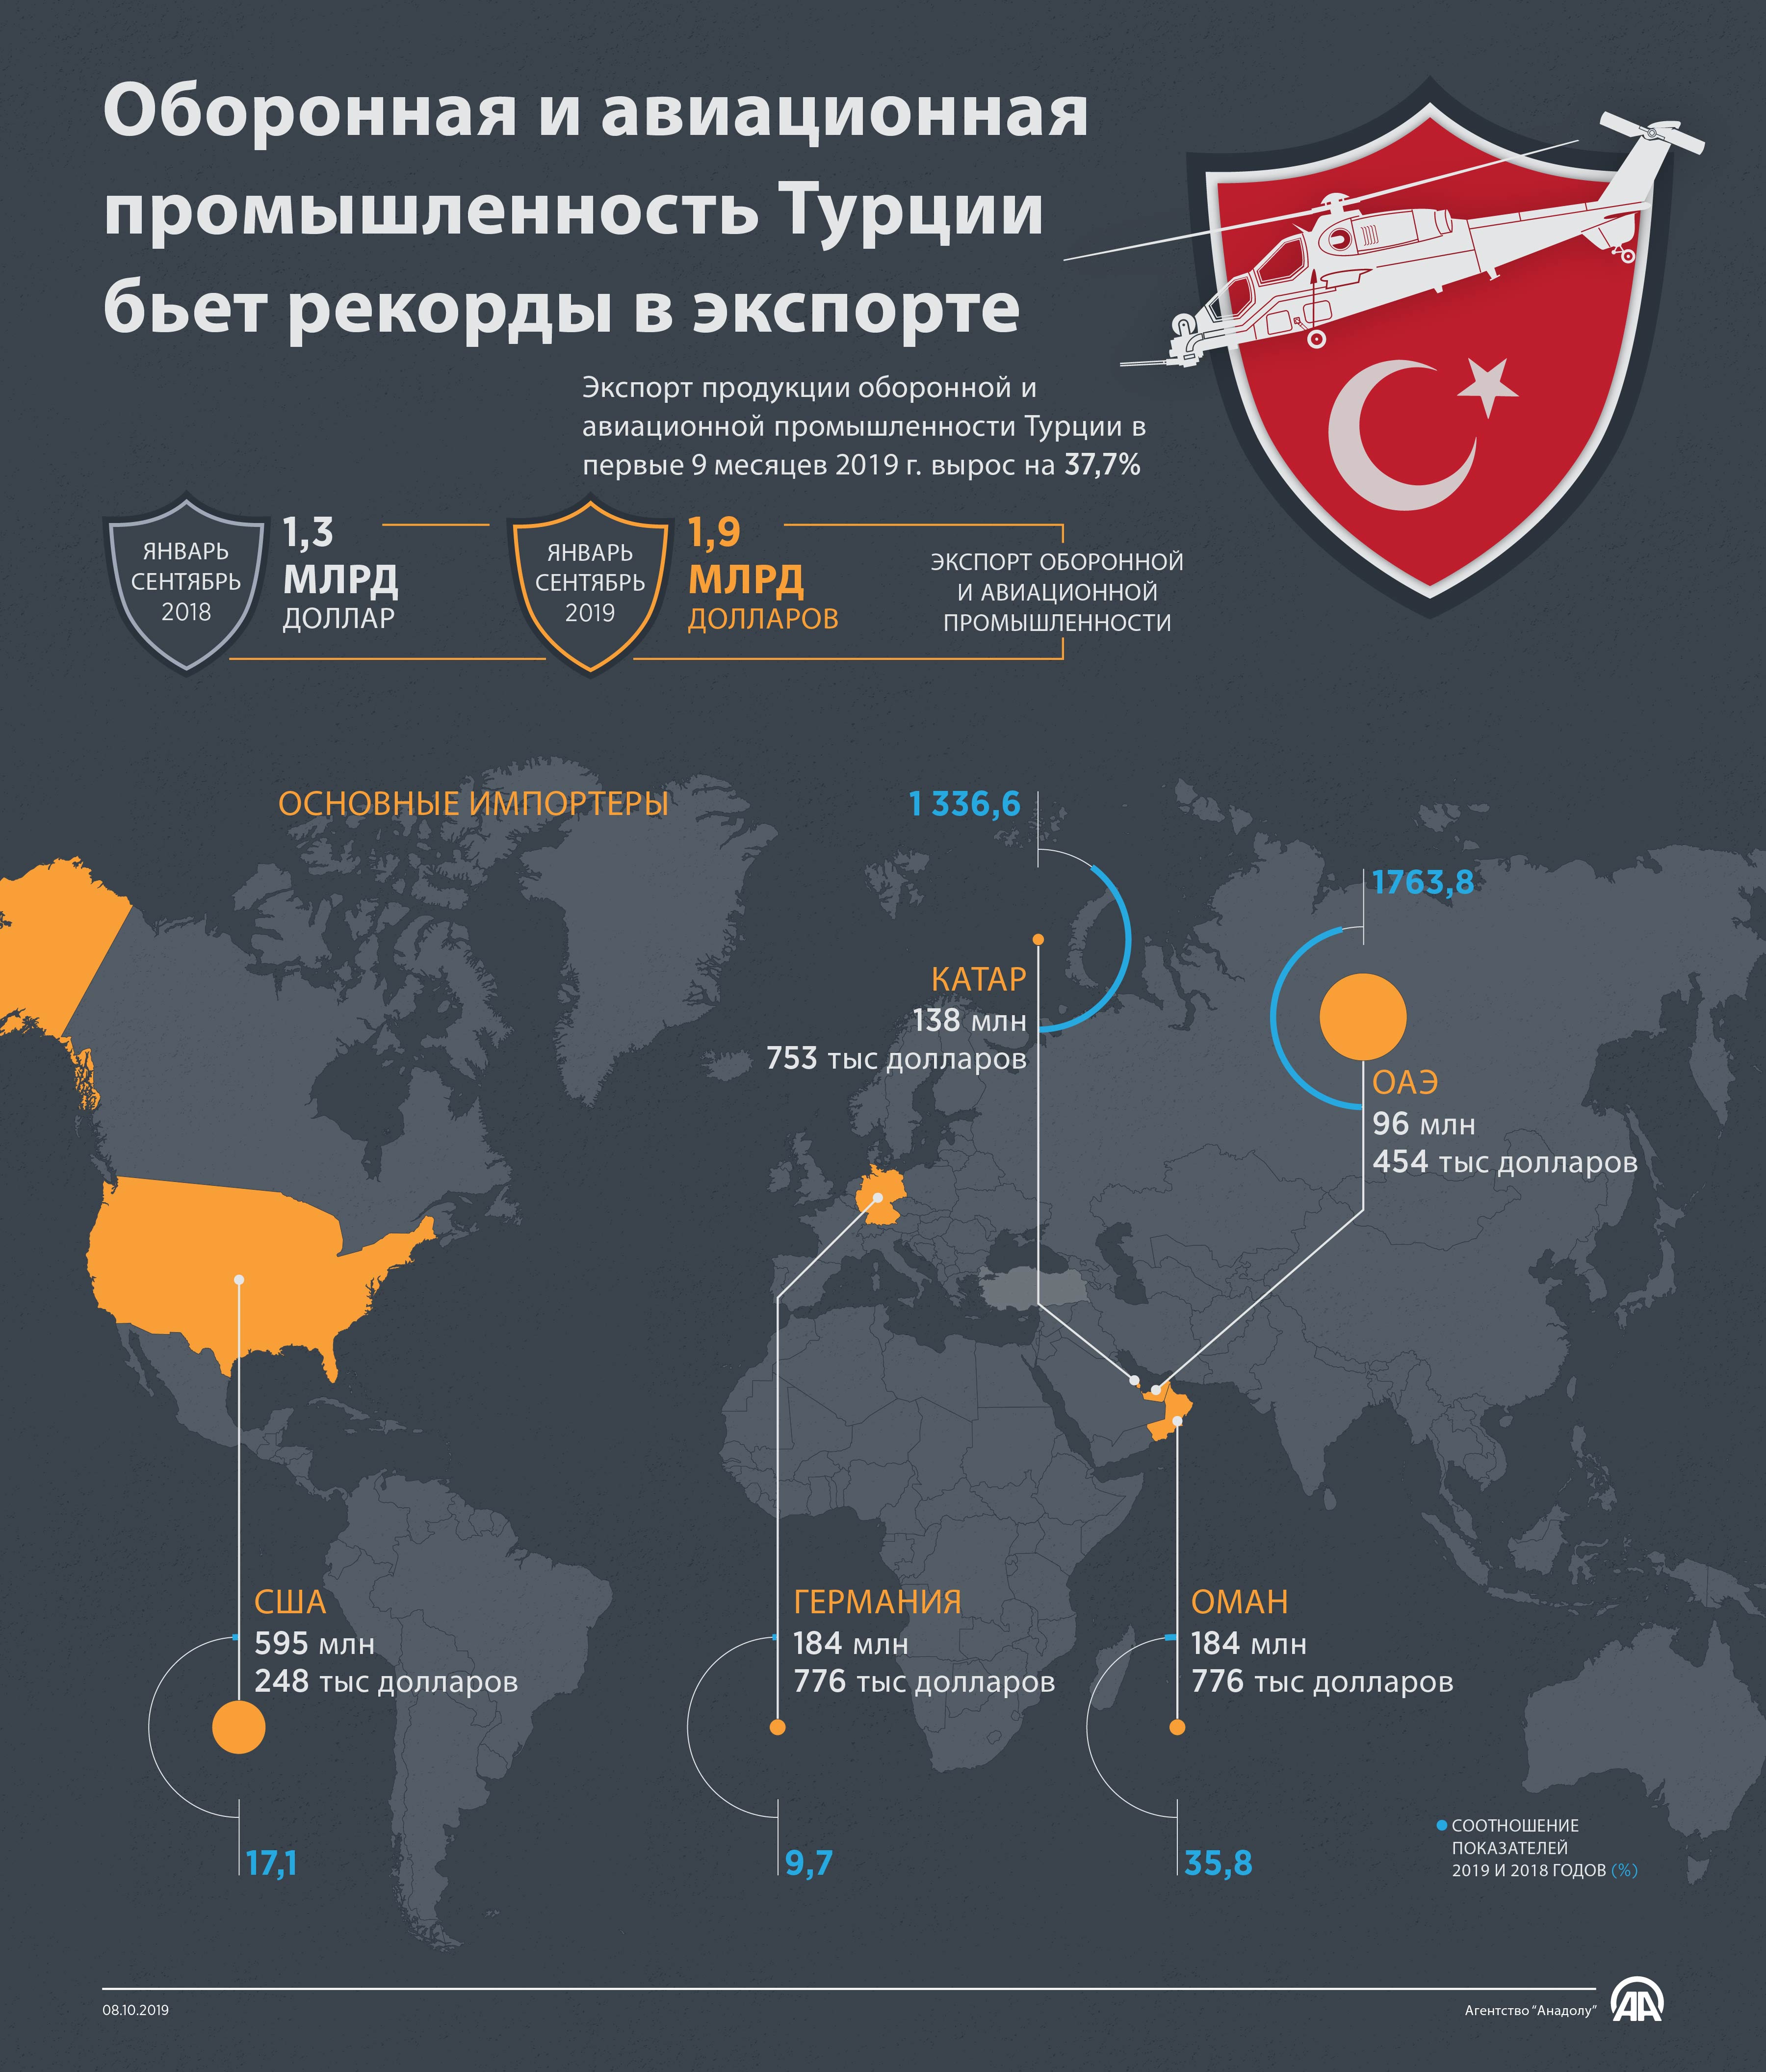 Оборонная и авиационная промышленность Турции бьет рекорды в экспорте